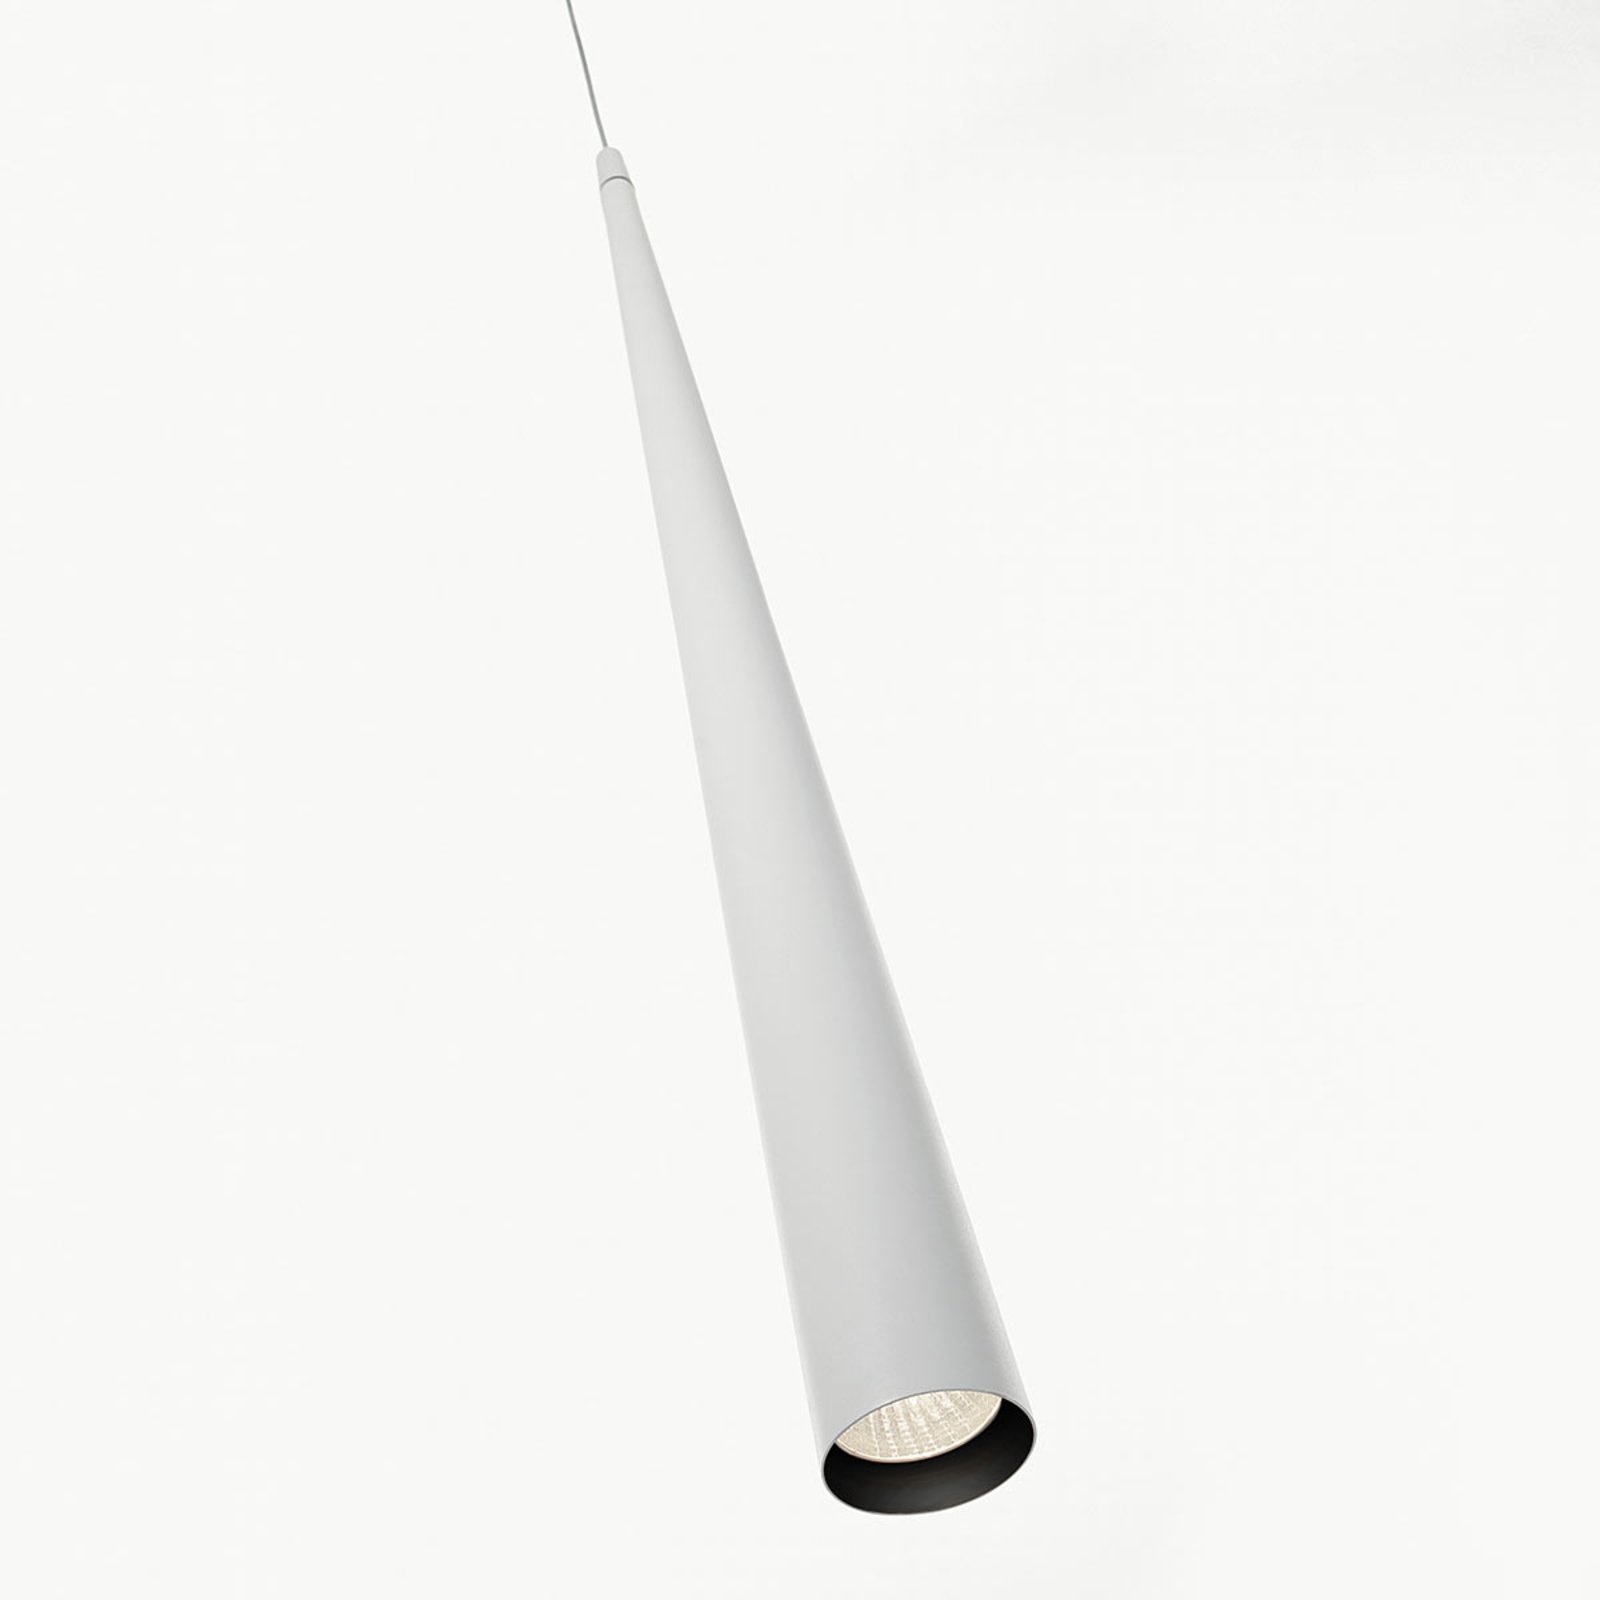 Dlhé závesné LED svietidlo Micro S75, biele